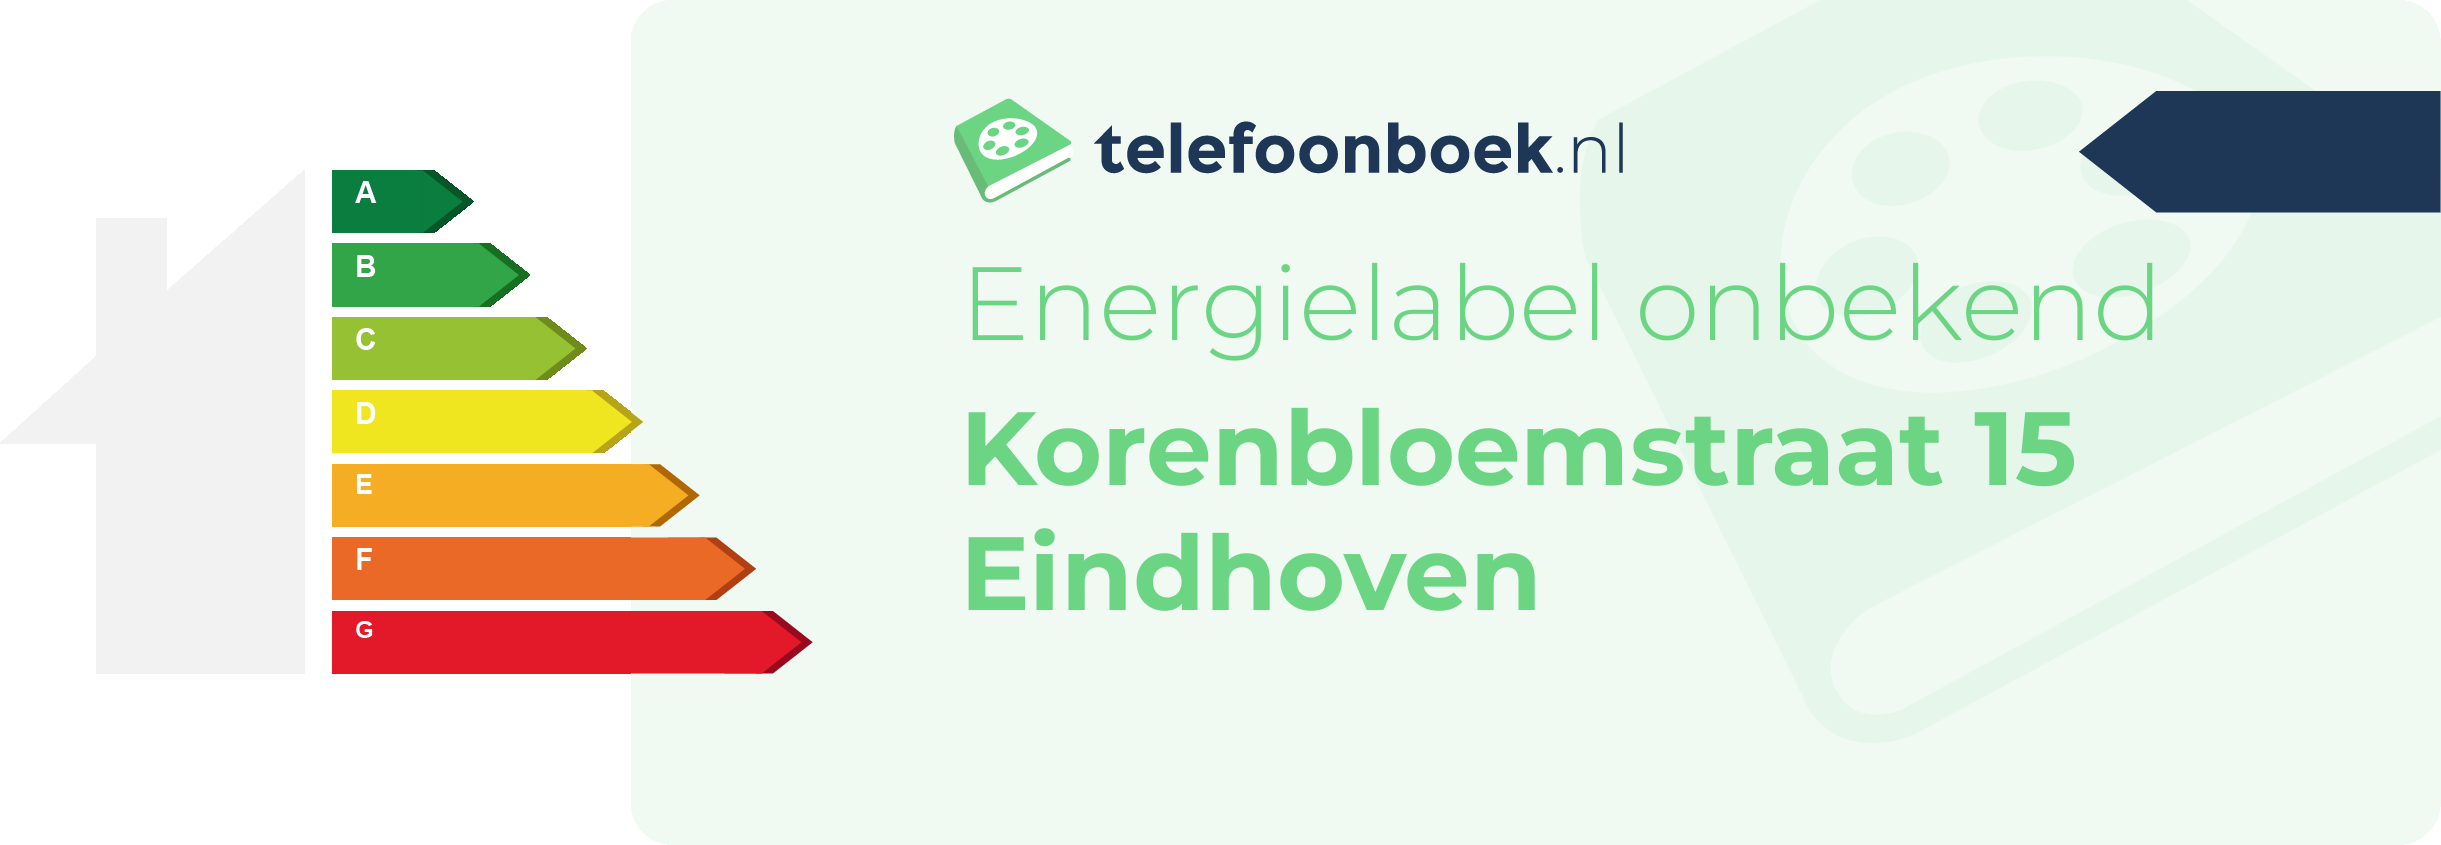 Energielabel Korenbloemstraat 15 Eindhoven